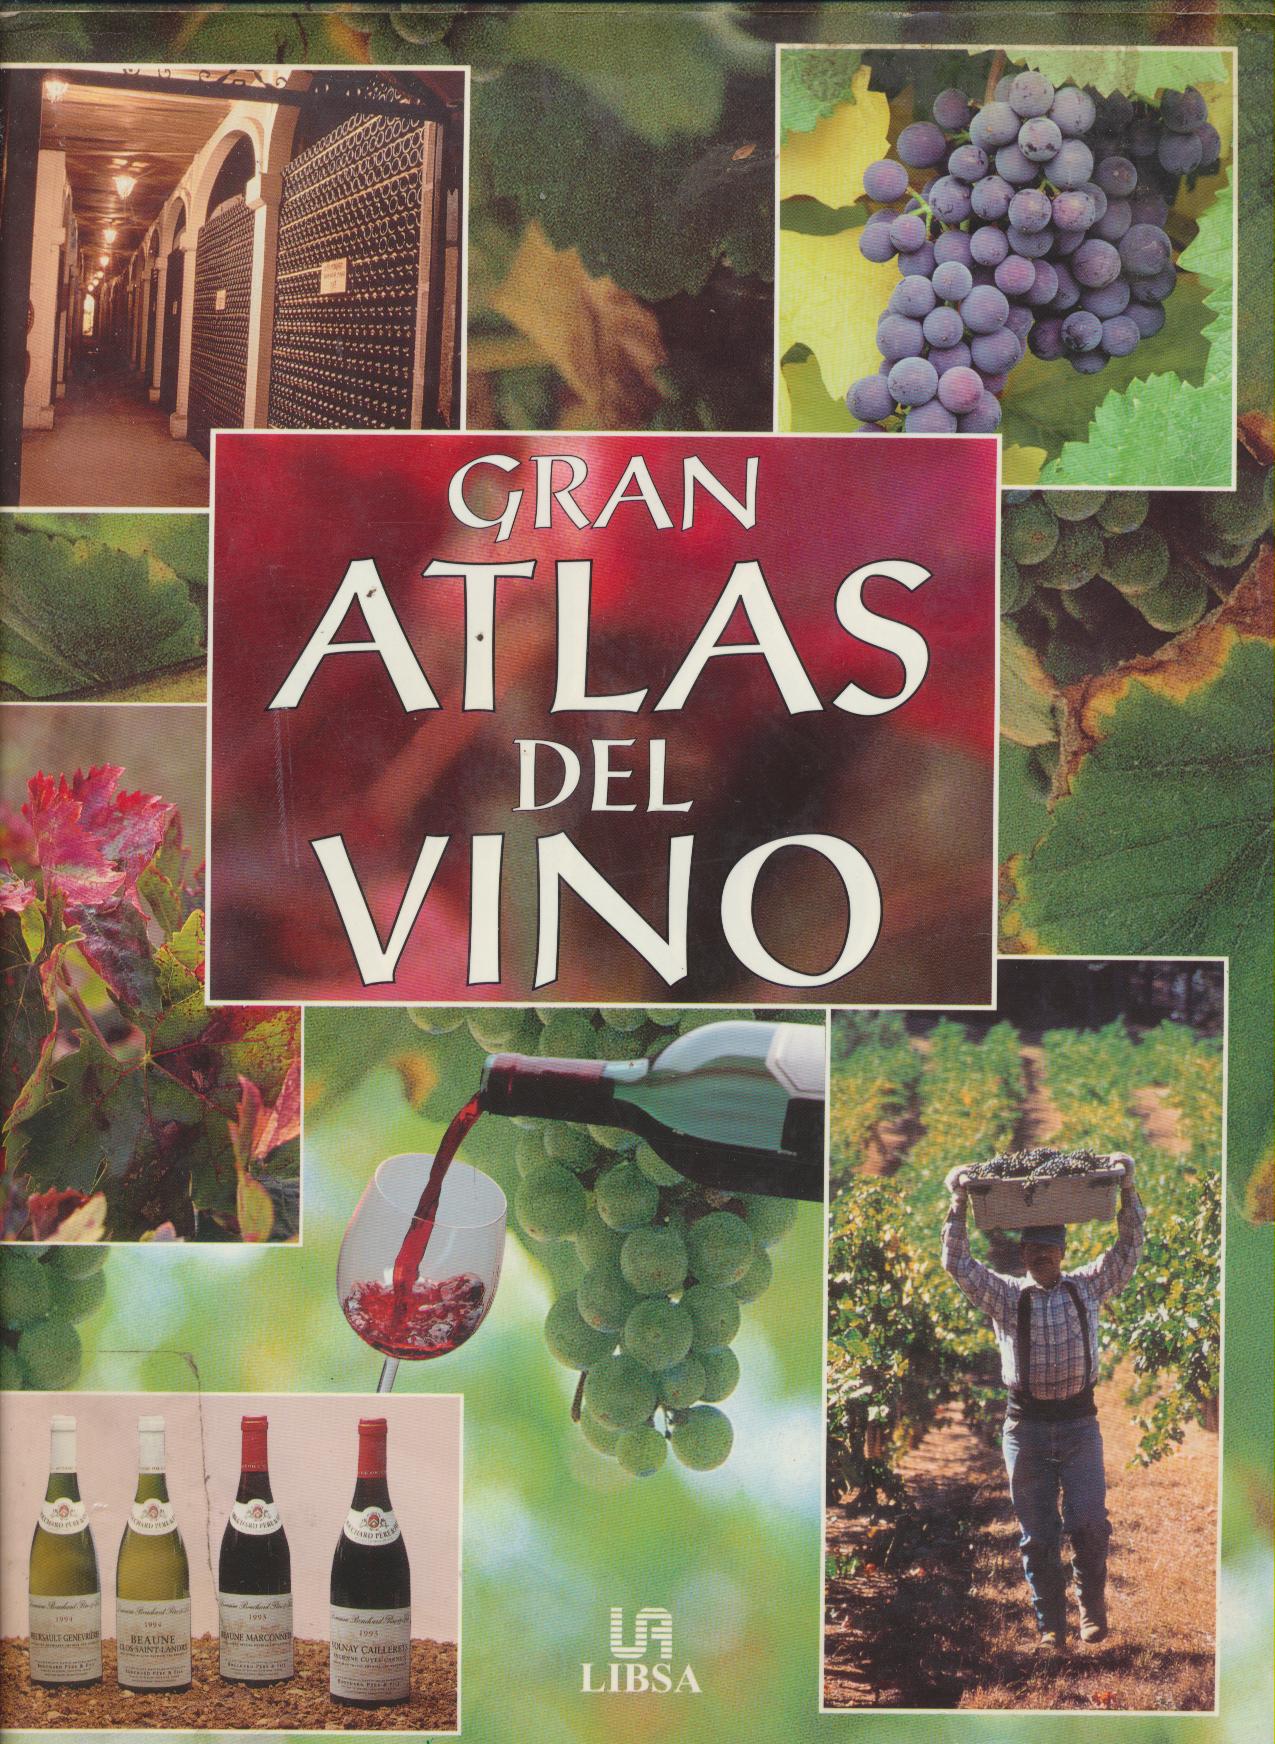 Gran Atlas del Vino. Concha Baeza. Libsa 2000